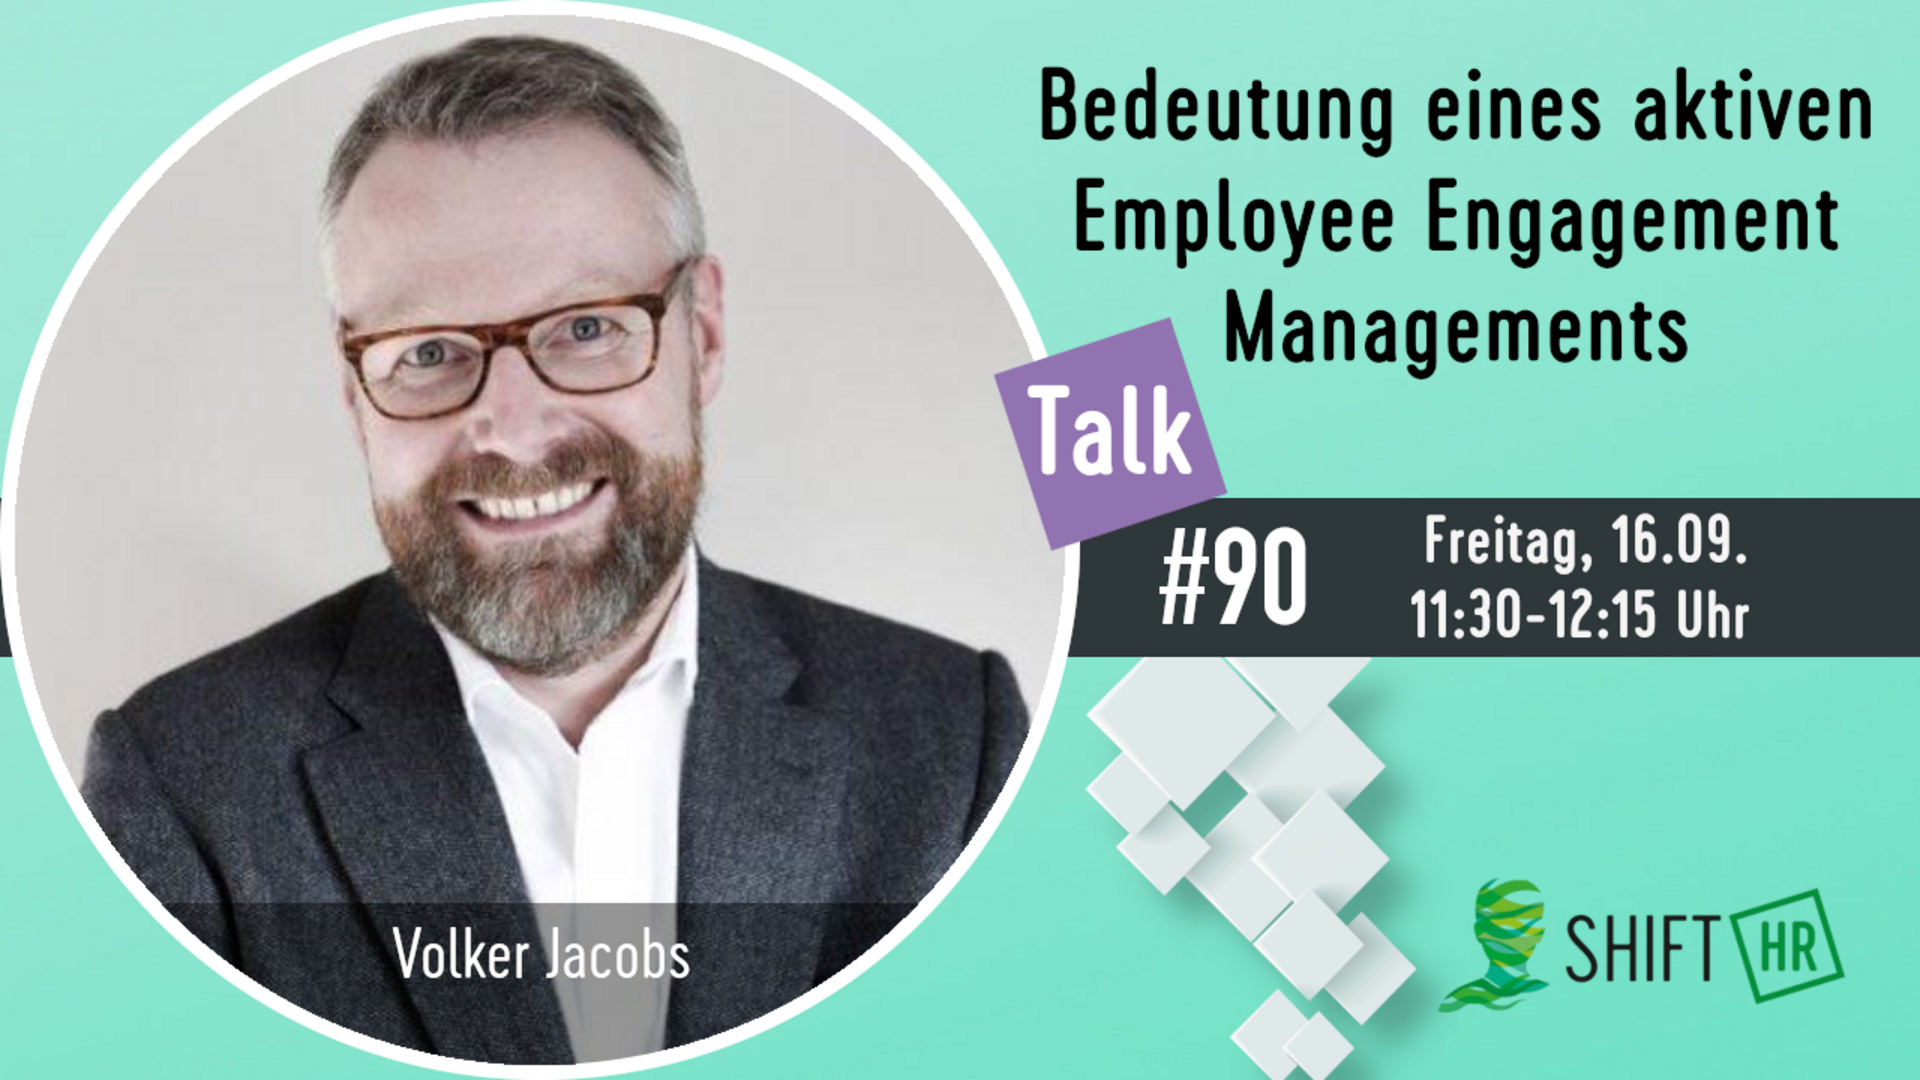 Im Gespräch mit Volker Jacobs zum Wichtigkeit des aktiven Employee Engagement Managements